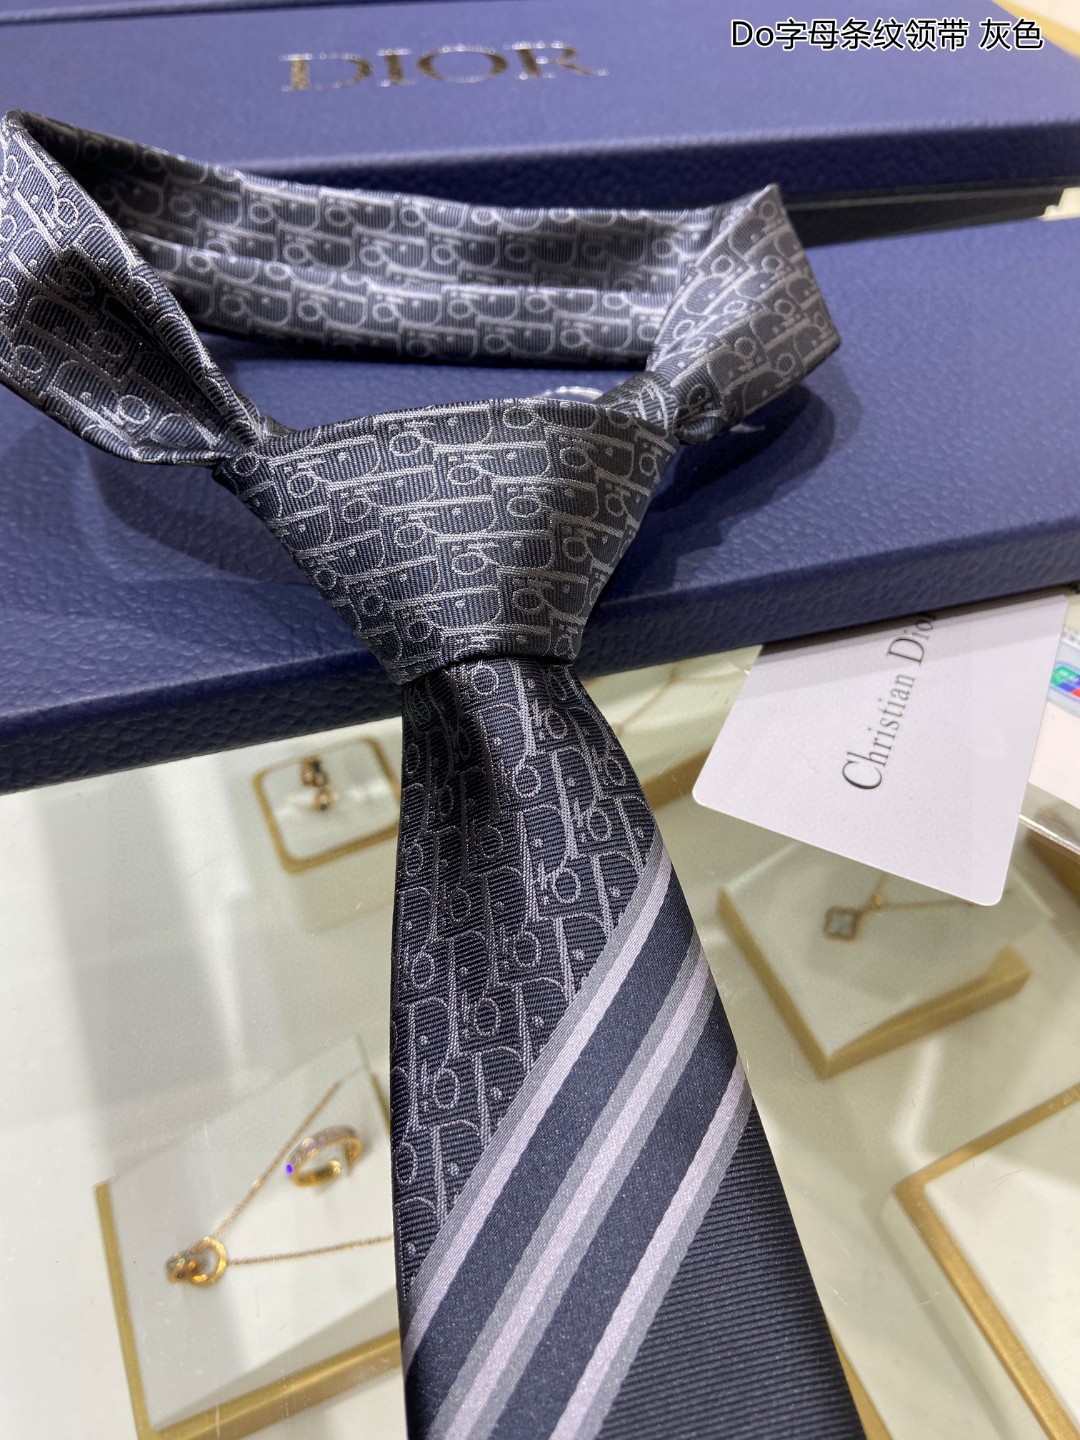 爆款到Do家新款领带特价配盒子Dior男士Do字母条纹领带稀有展现精湛手工与时尚优雅的理想选择这款采用D